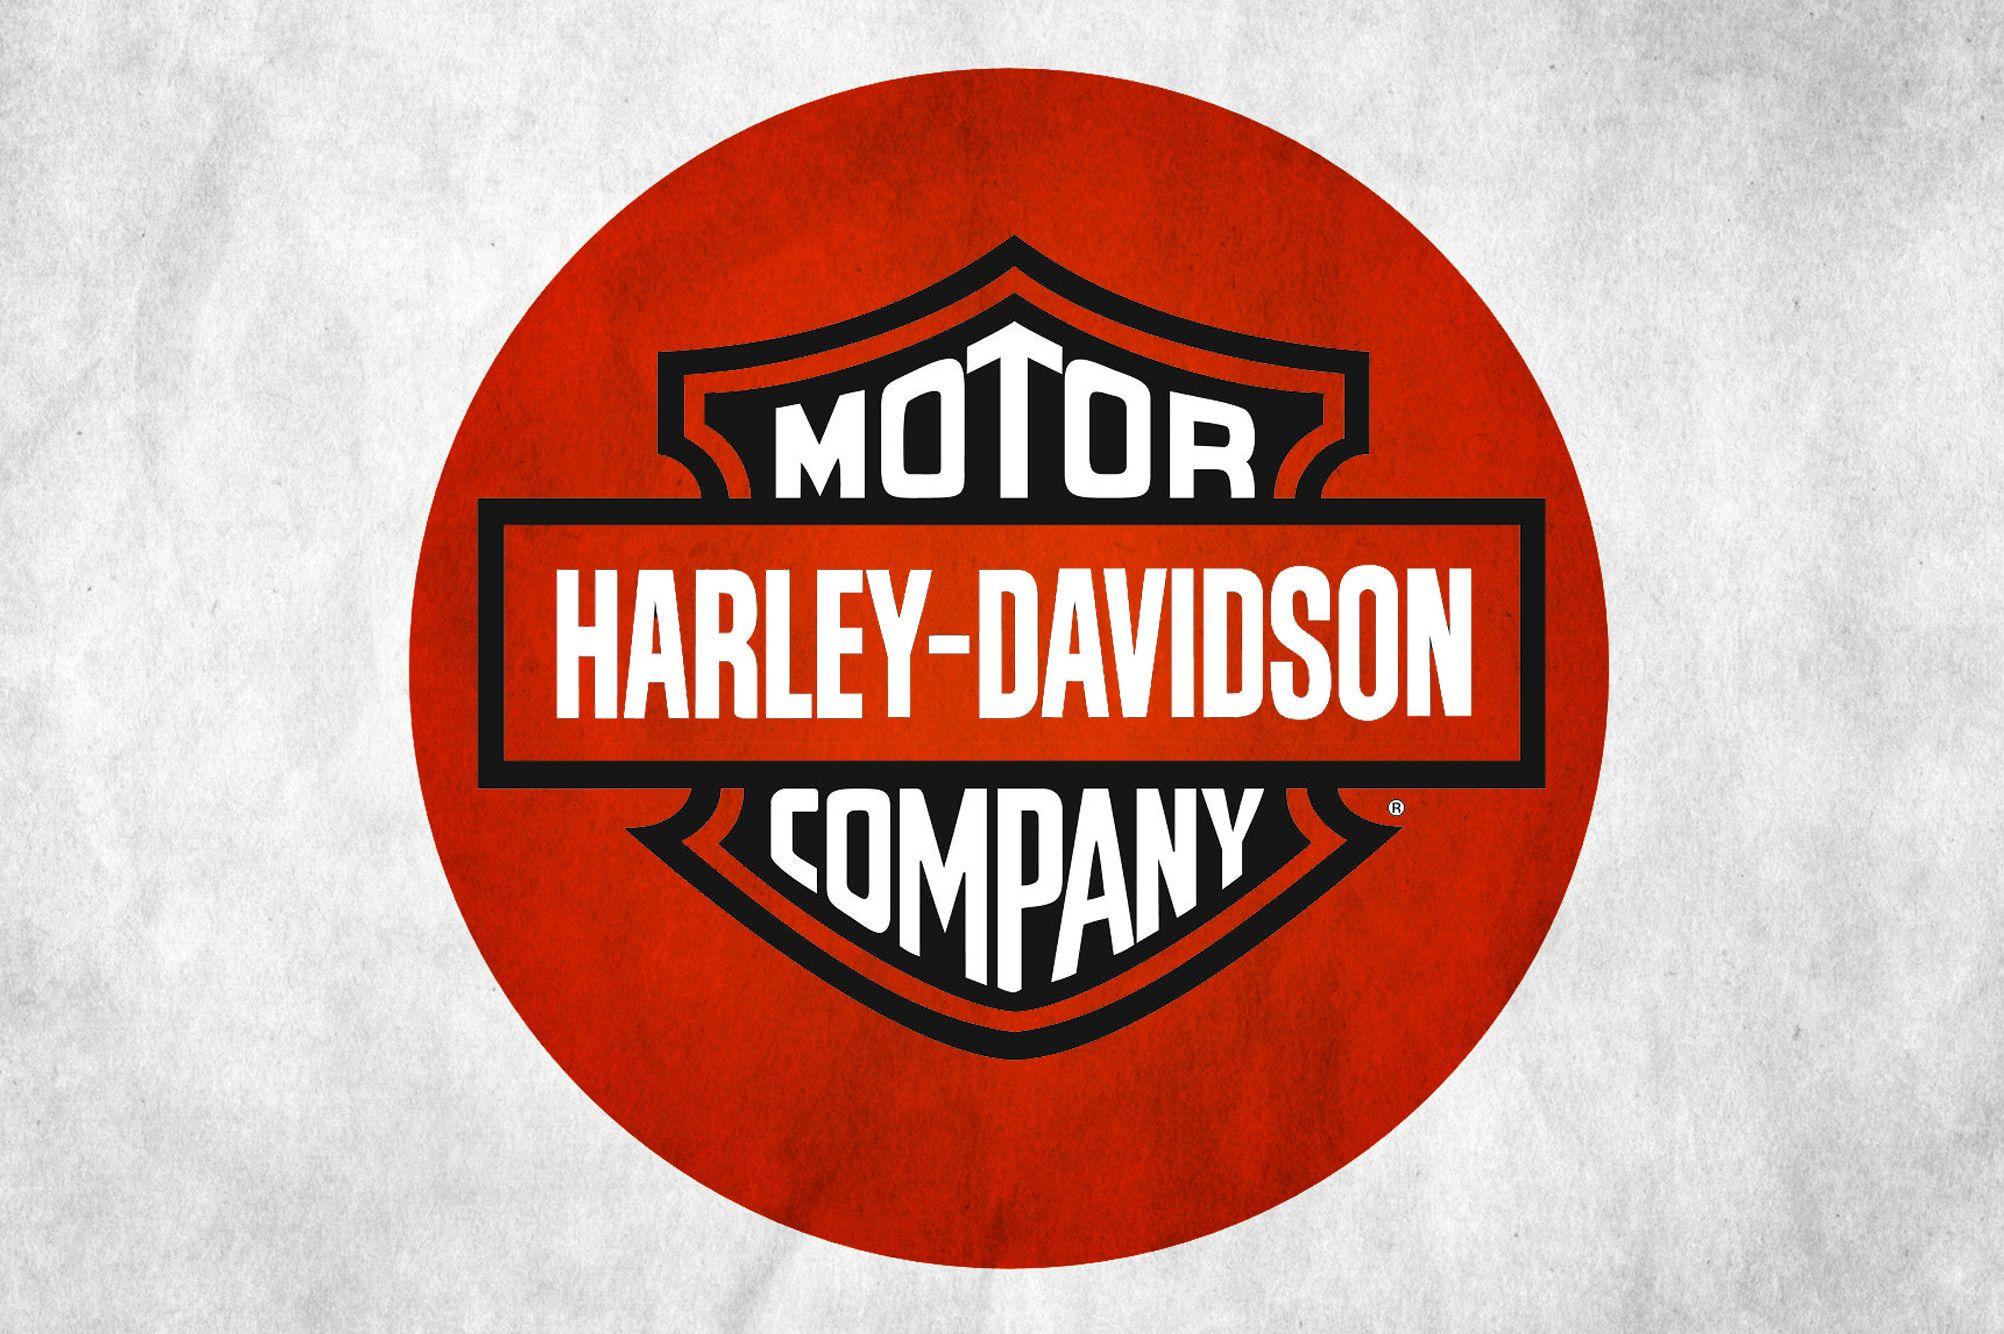 Japanese Bike Parts Company Logo - Harley Davidson acquired by Japanese owned Kawasaki Motor Company ...